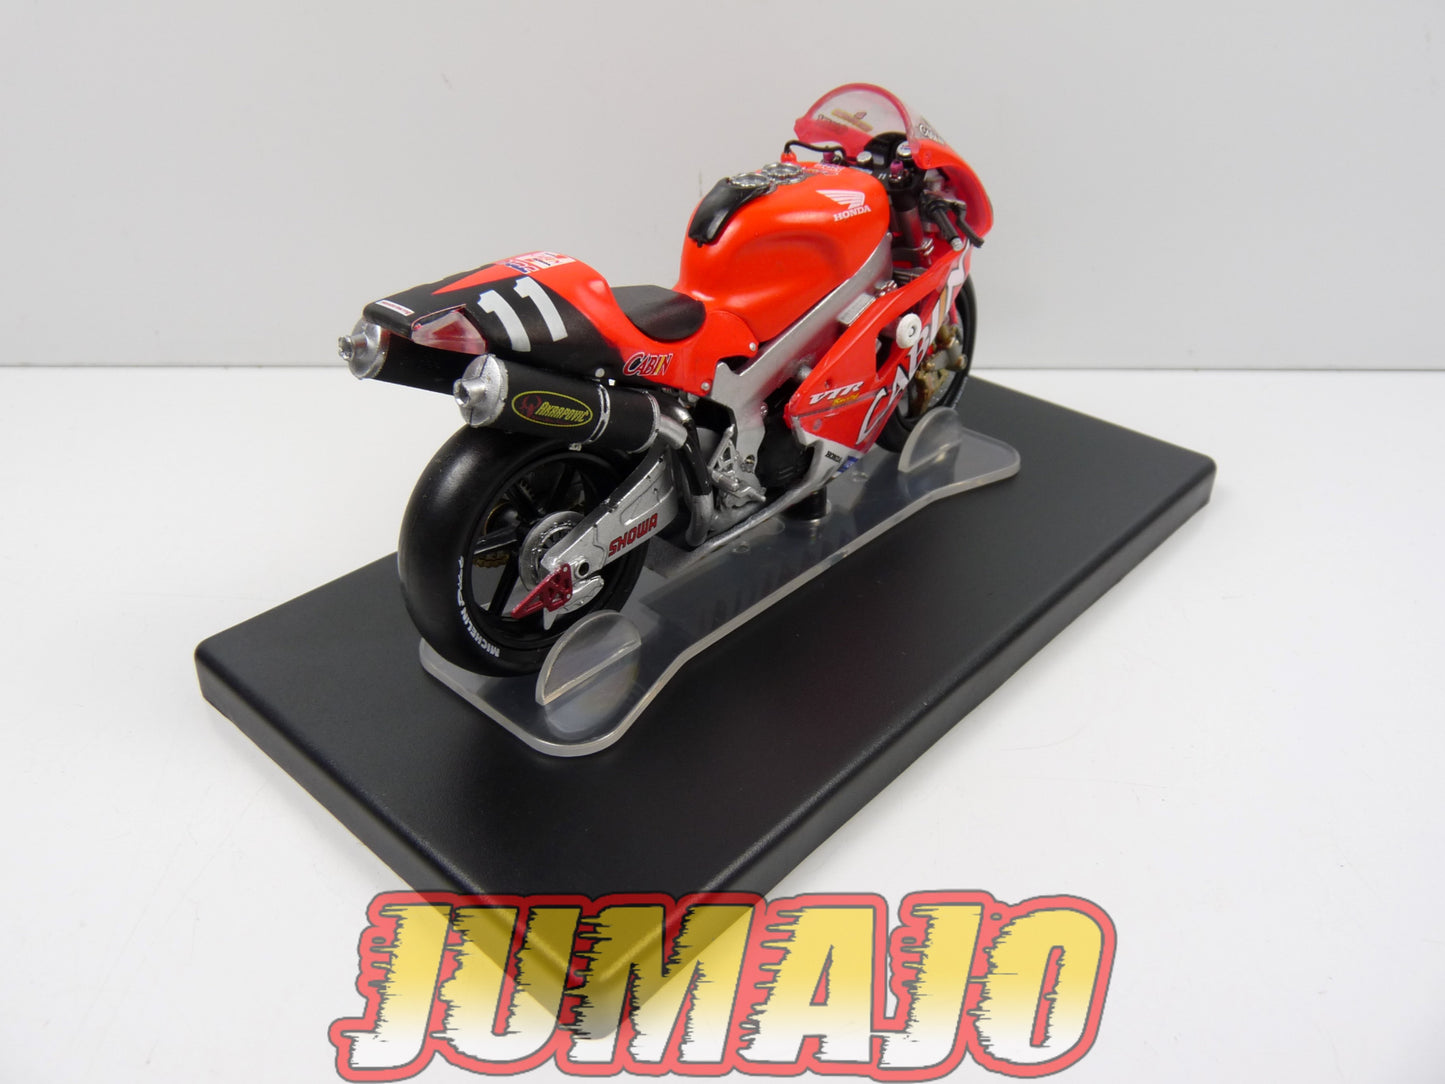 MR106 Moto Valentino Rossi LEO MODELS 1/18 : Honda VTR 1000 #11 8h Suzuka 2001